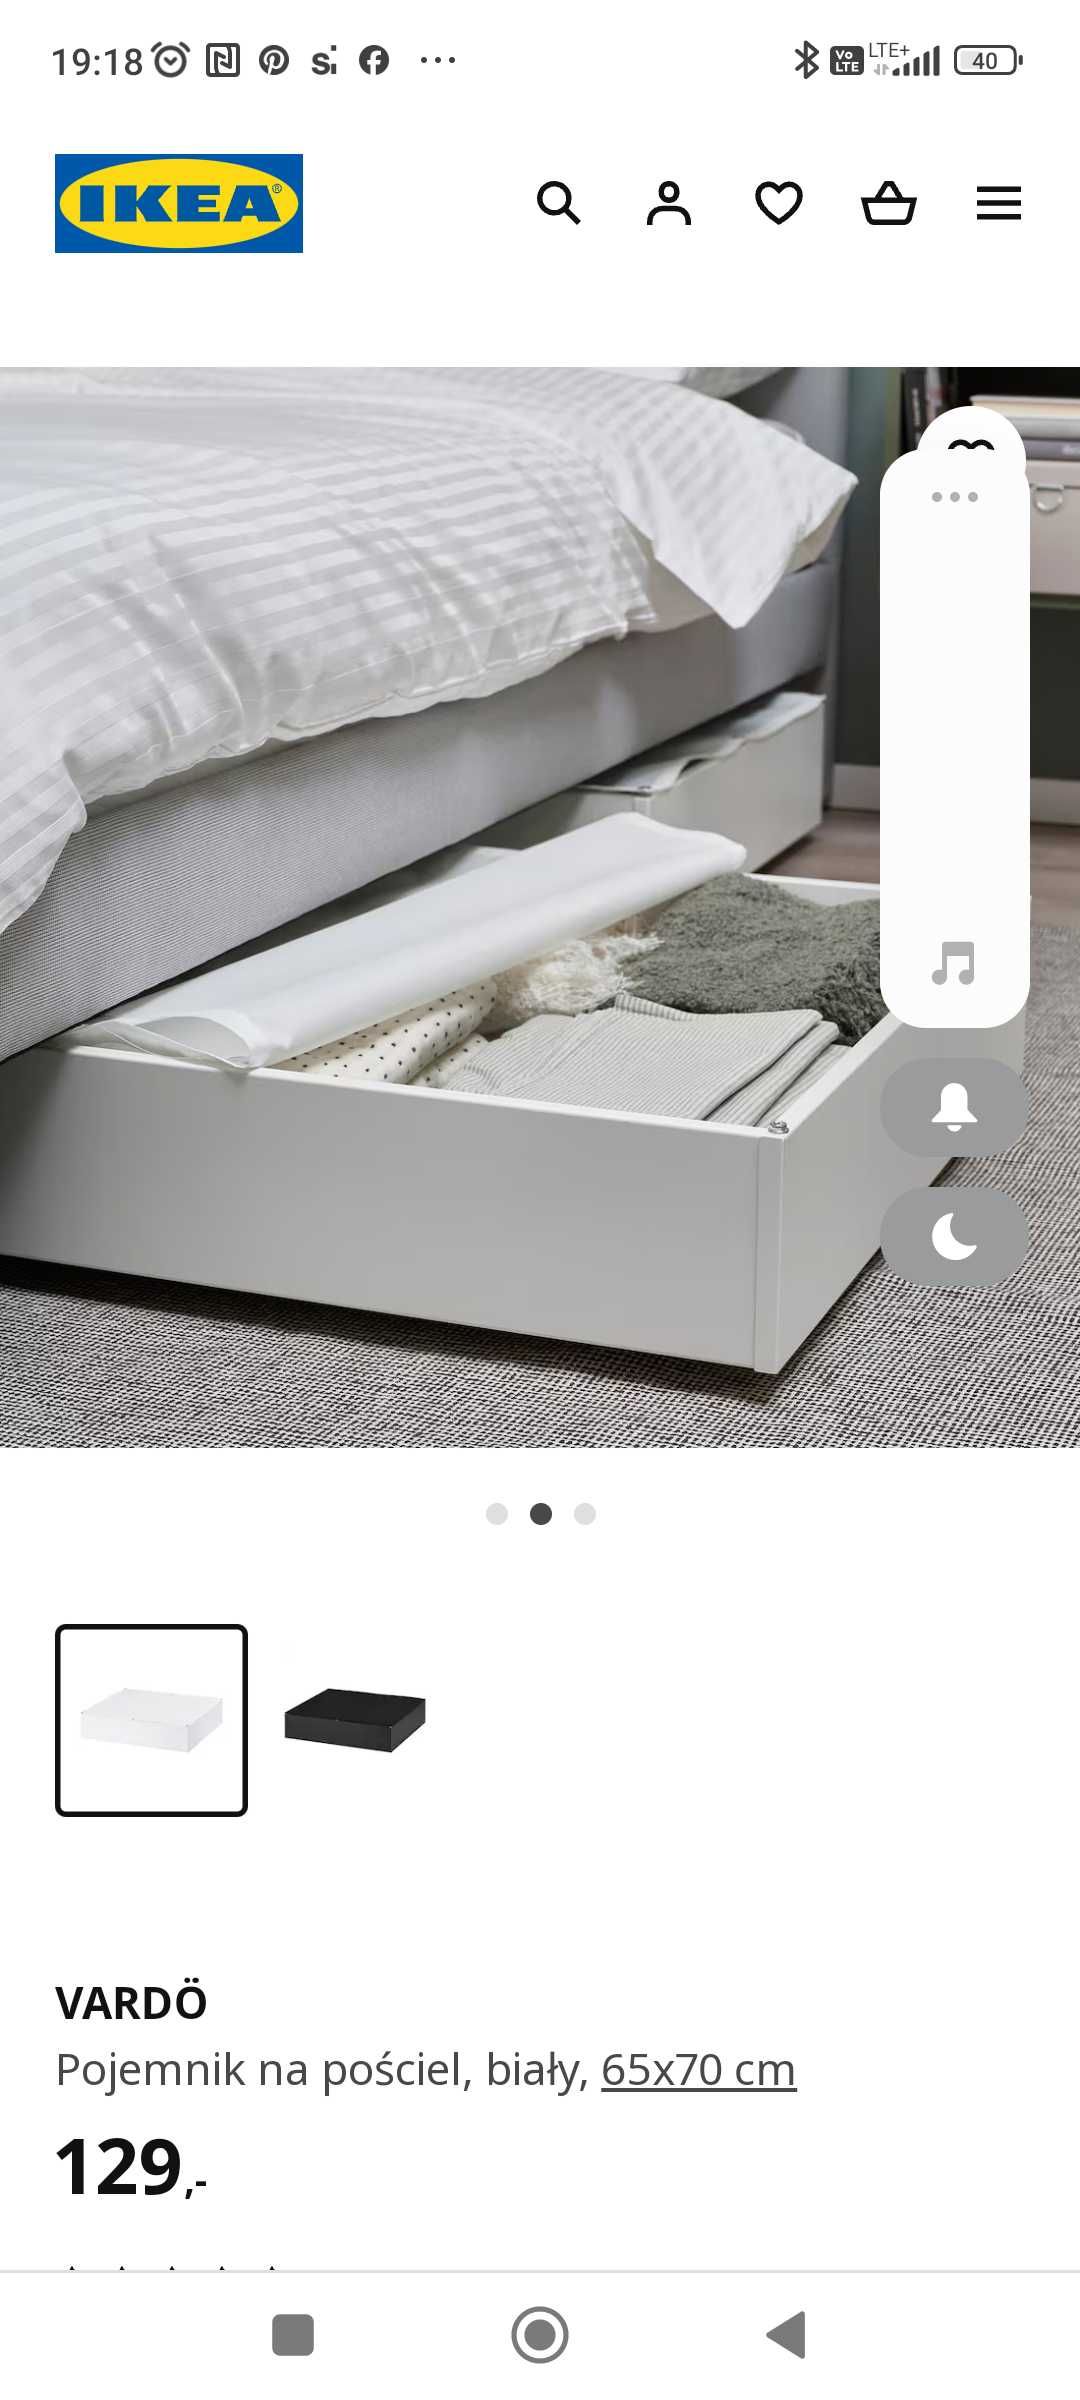 Pojemnik/szuflada na pościel Ikea x2